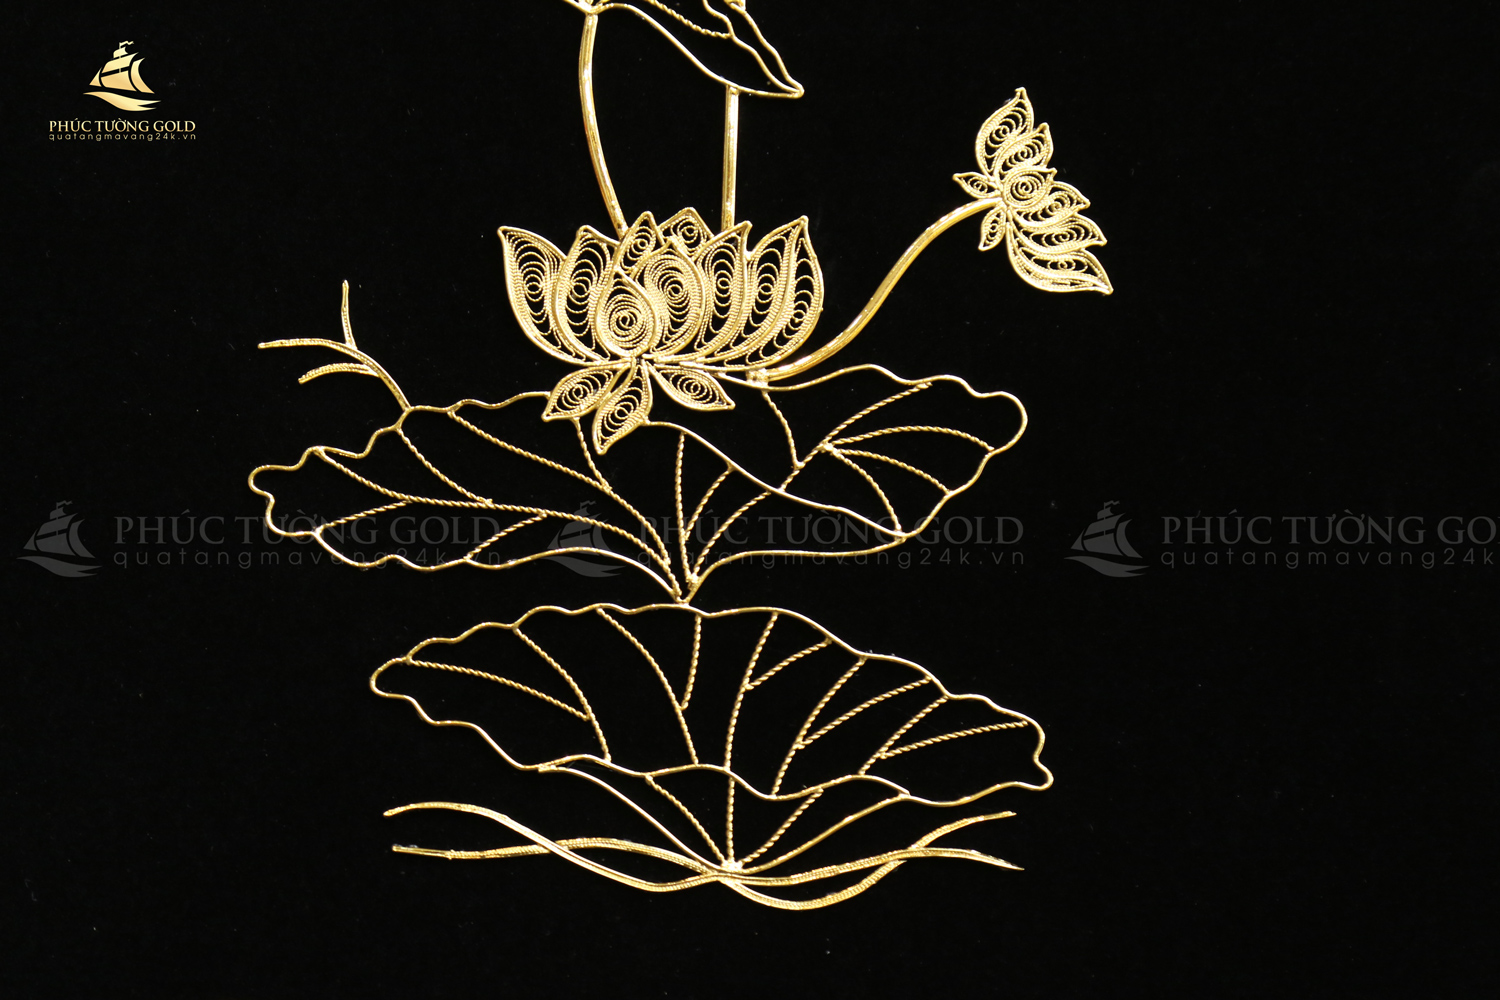 Tranh hoa sen mạ vàng mẫu mới - HS05 4